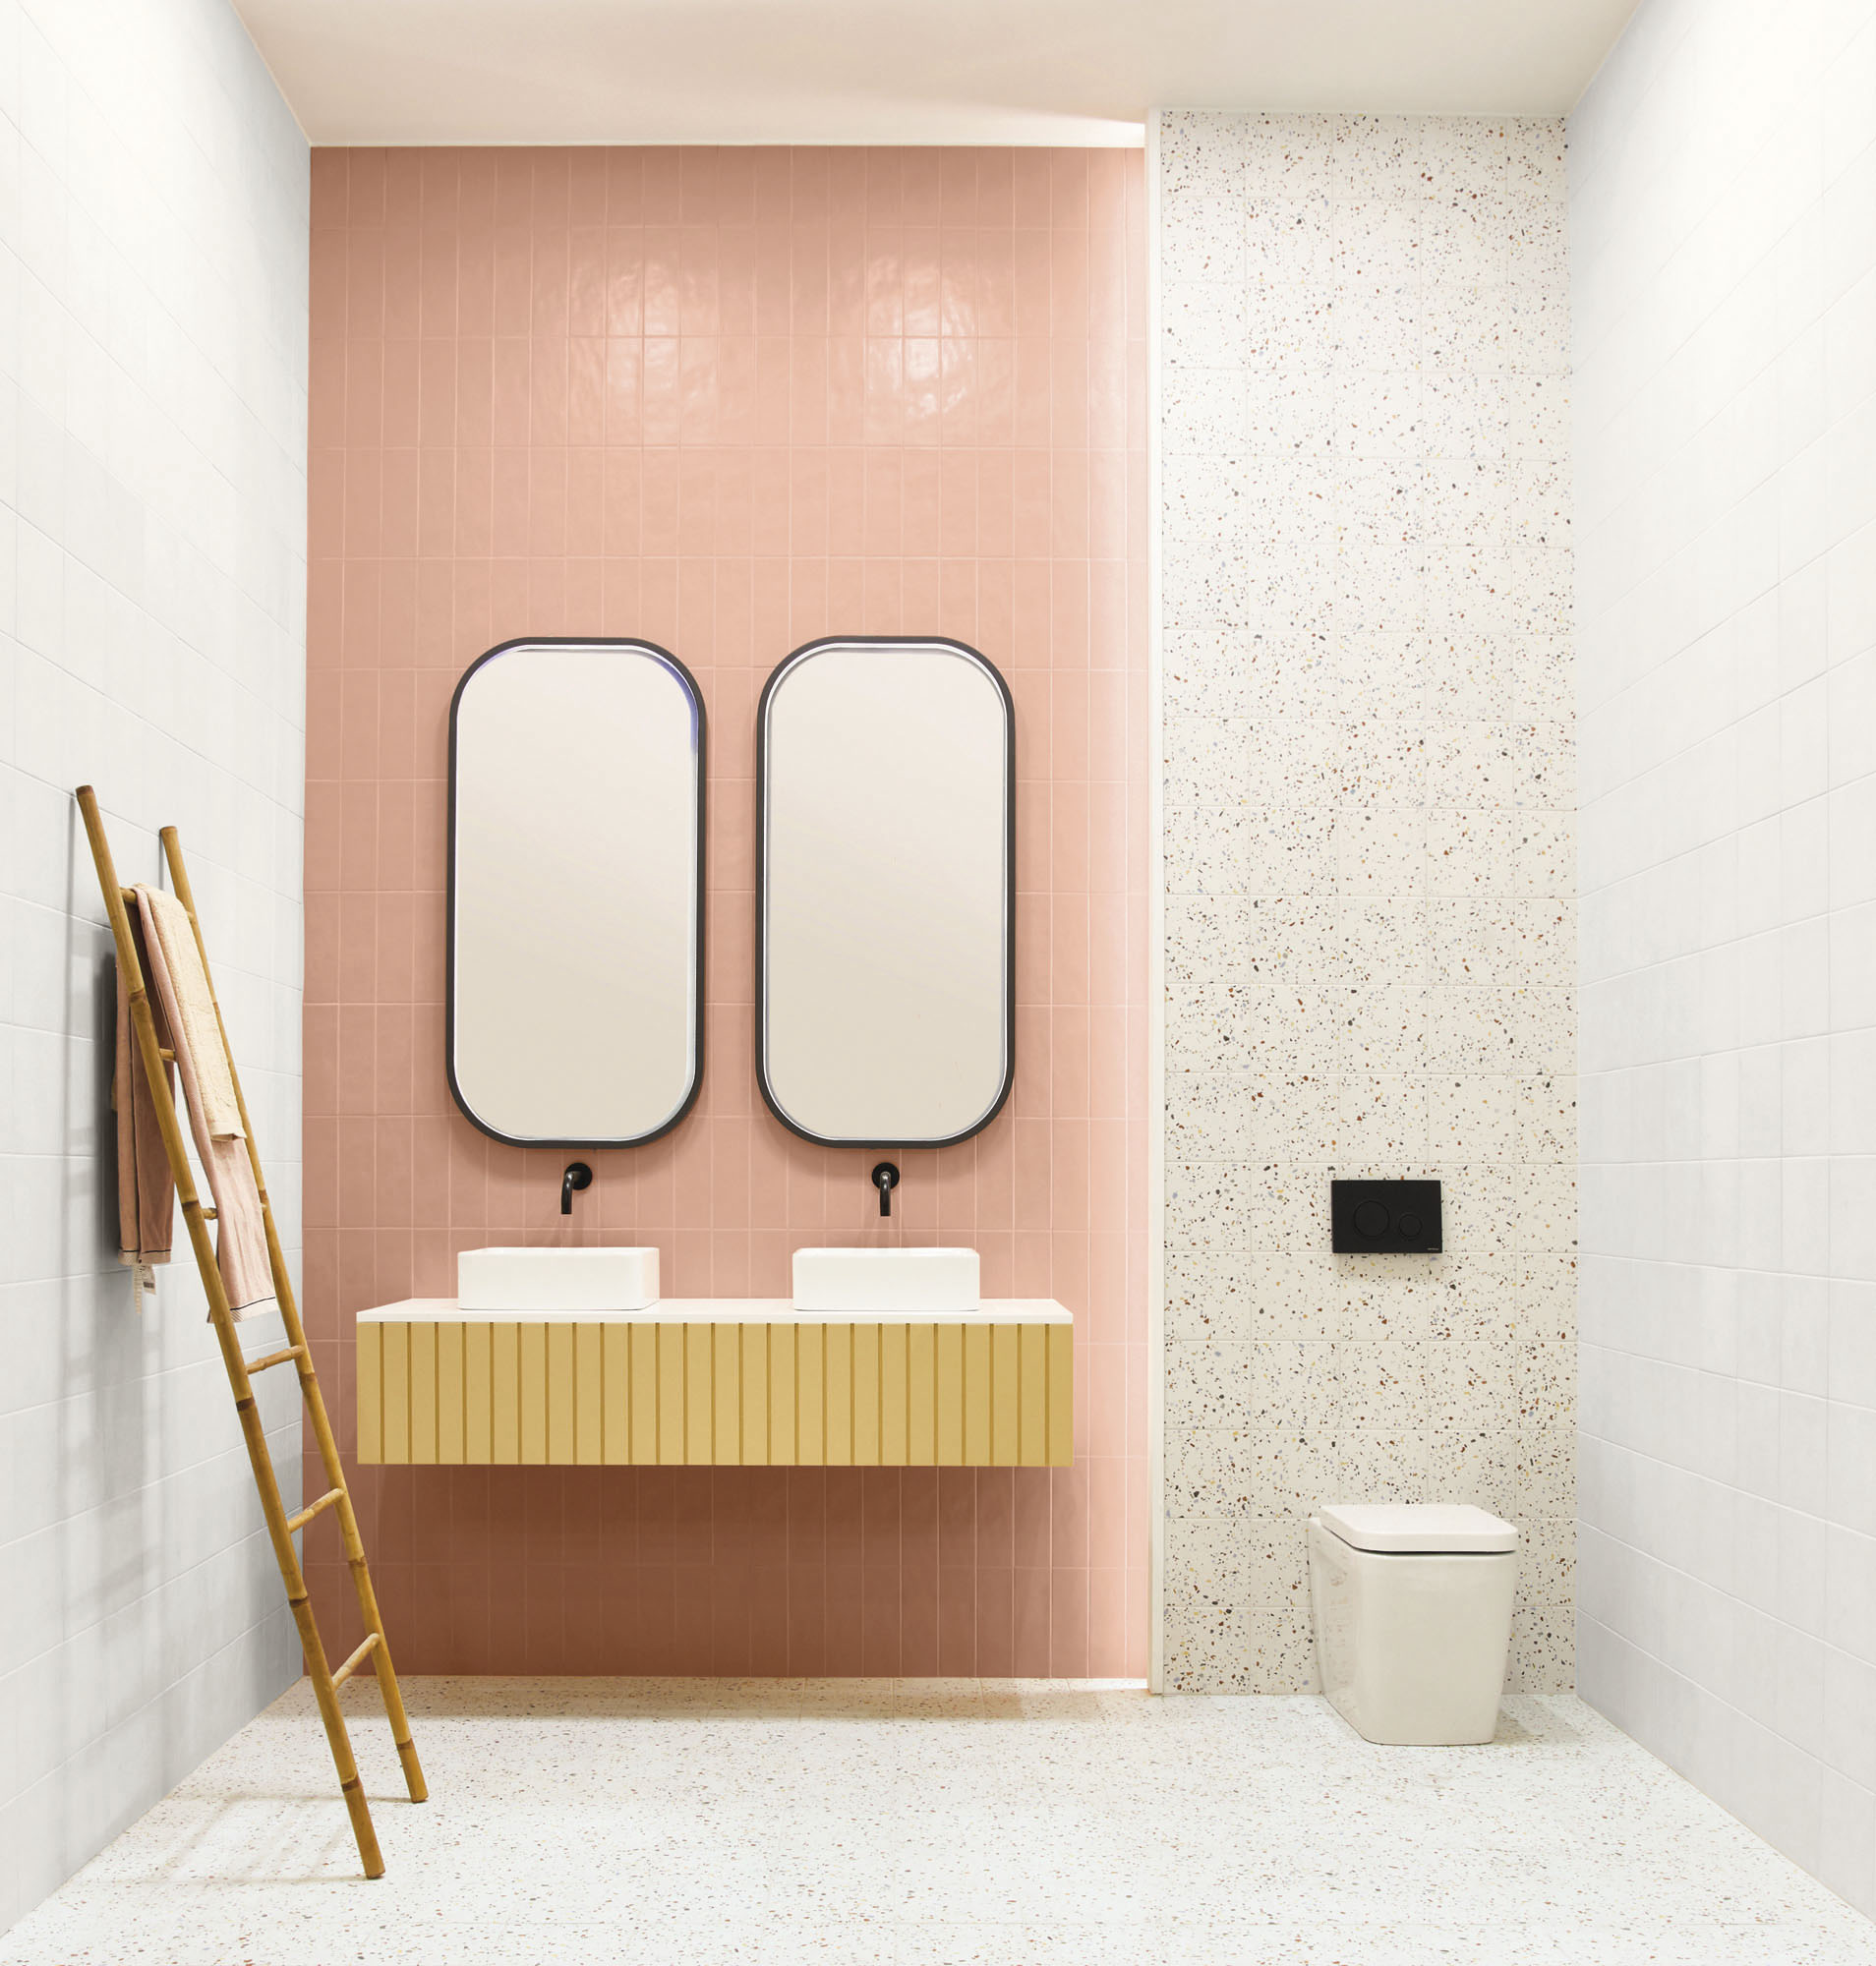 Terrazzo blanc avec éclats colorés 20x20 cm dans une salle de bain tons roses et blancs avec meuble vasque échelle décorative et miroirs ovales